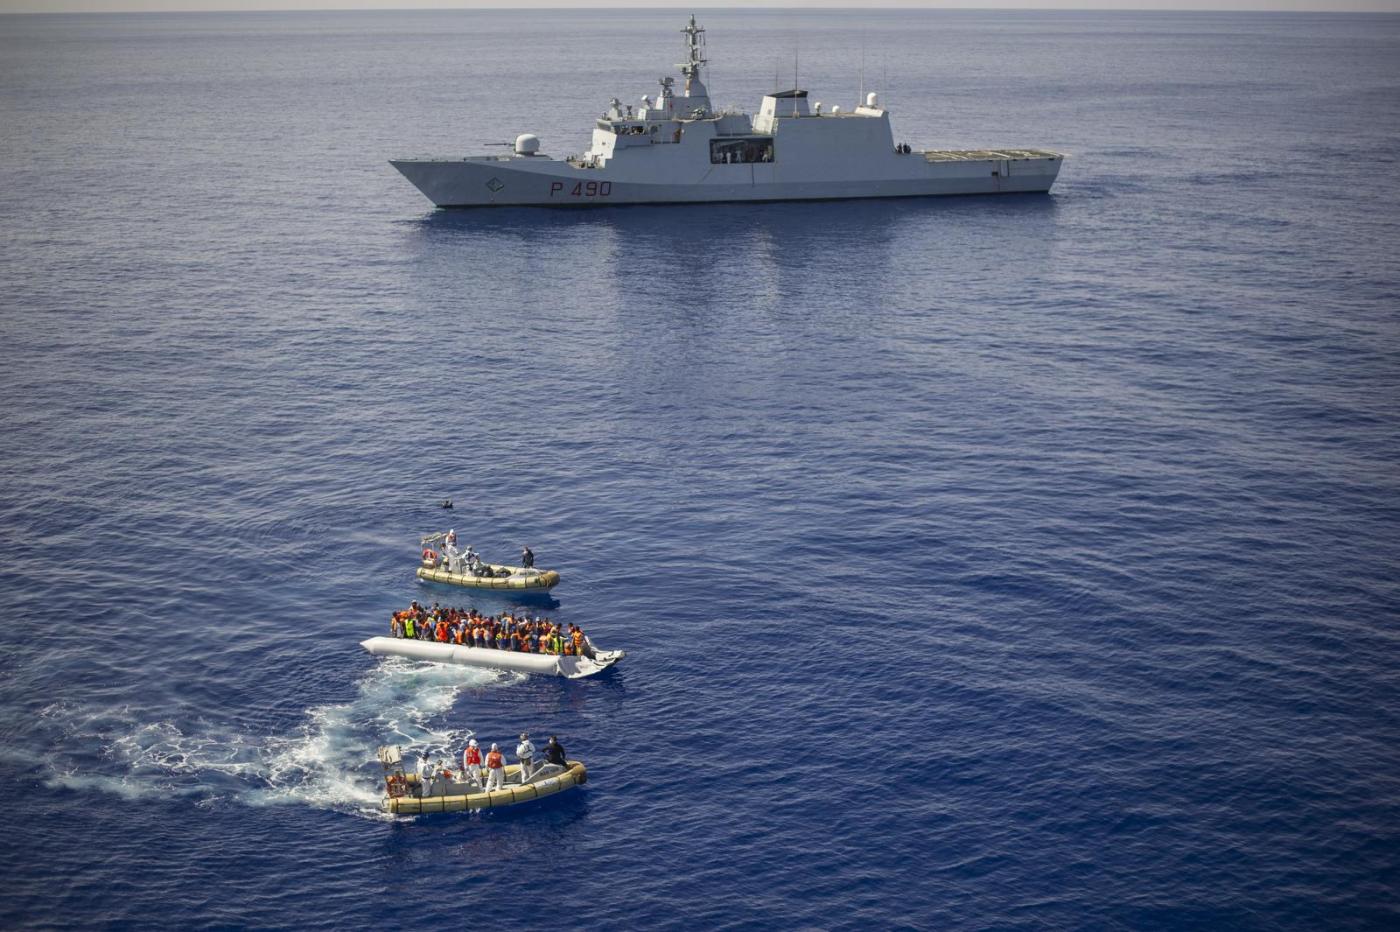 Canale di Sicilia: la nave della Marina Militare "Fulgosi" in soccorso ai migranti